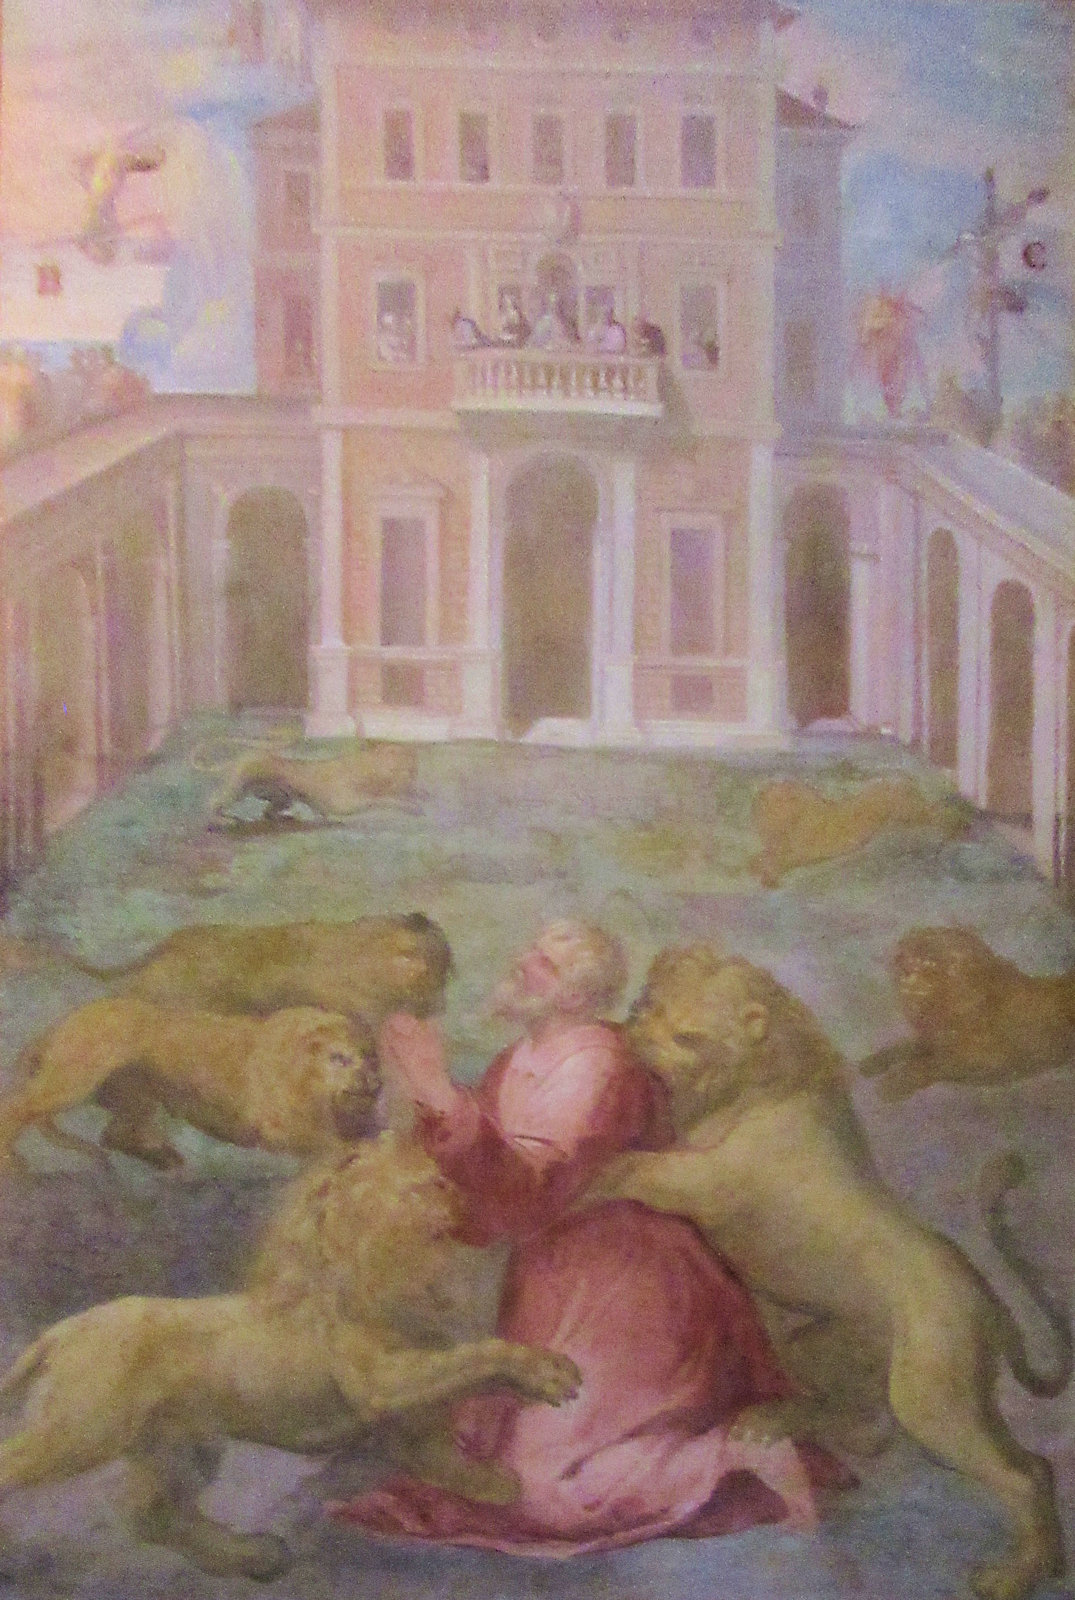 Ignatius' Martyrium in Rom, Fresko, um 1600, in der Kirche San Stefano Rotondo in Rom